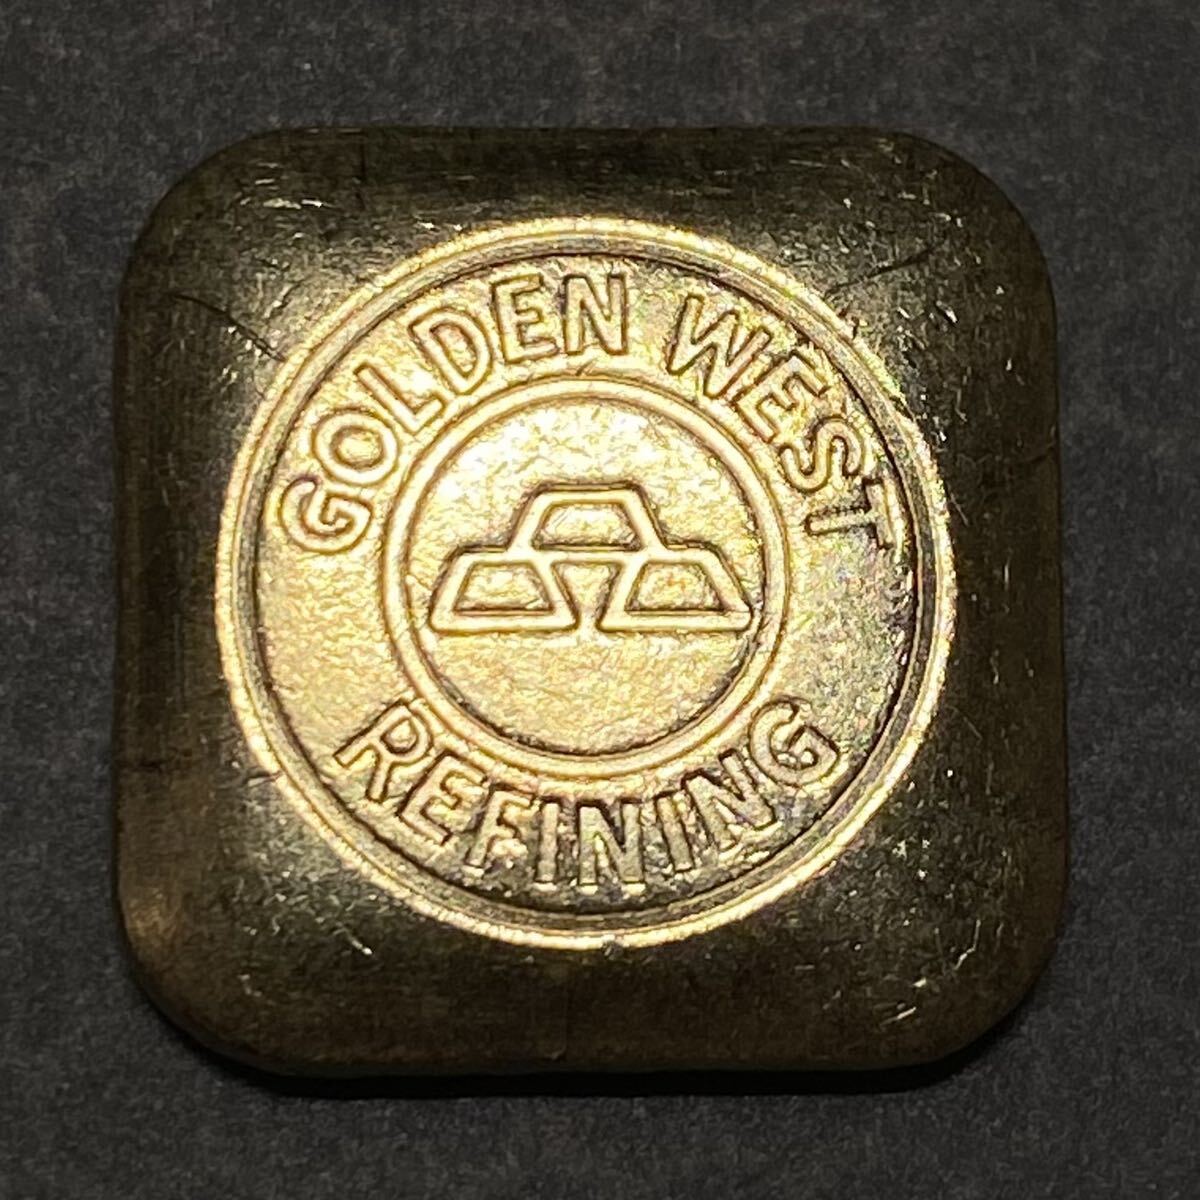 世界古銭 ザパースミント 約11.40g 一円貨幣 硬貨骨董品コインコレクション インゴット 24金 流通品 延べ棒 ゴールド の画像1